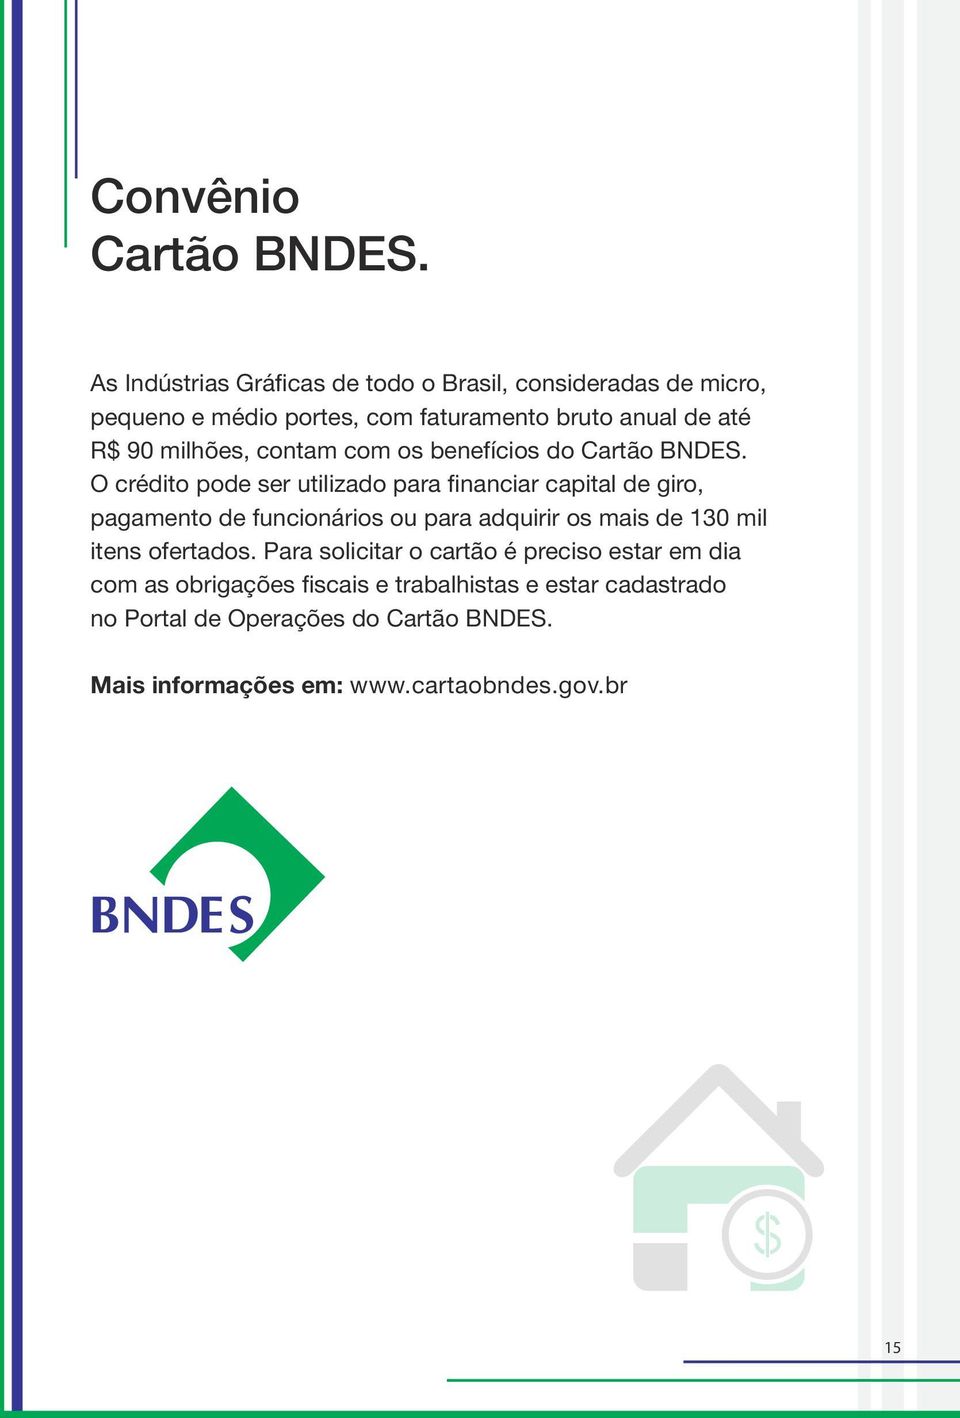 milhões, contam com os benefícios do Cartão BNDES.